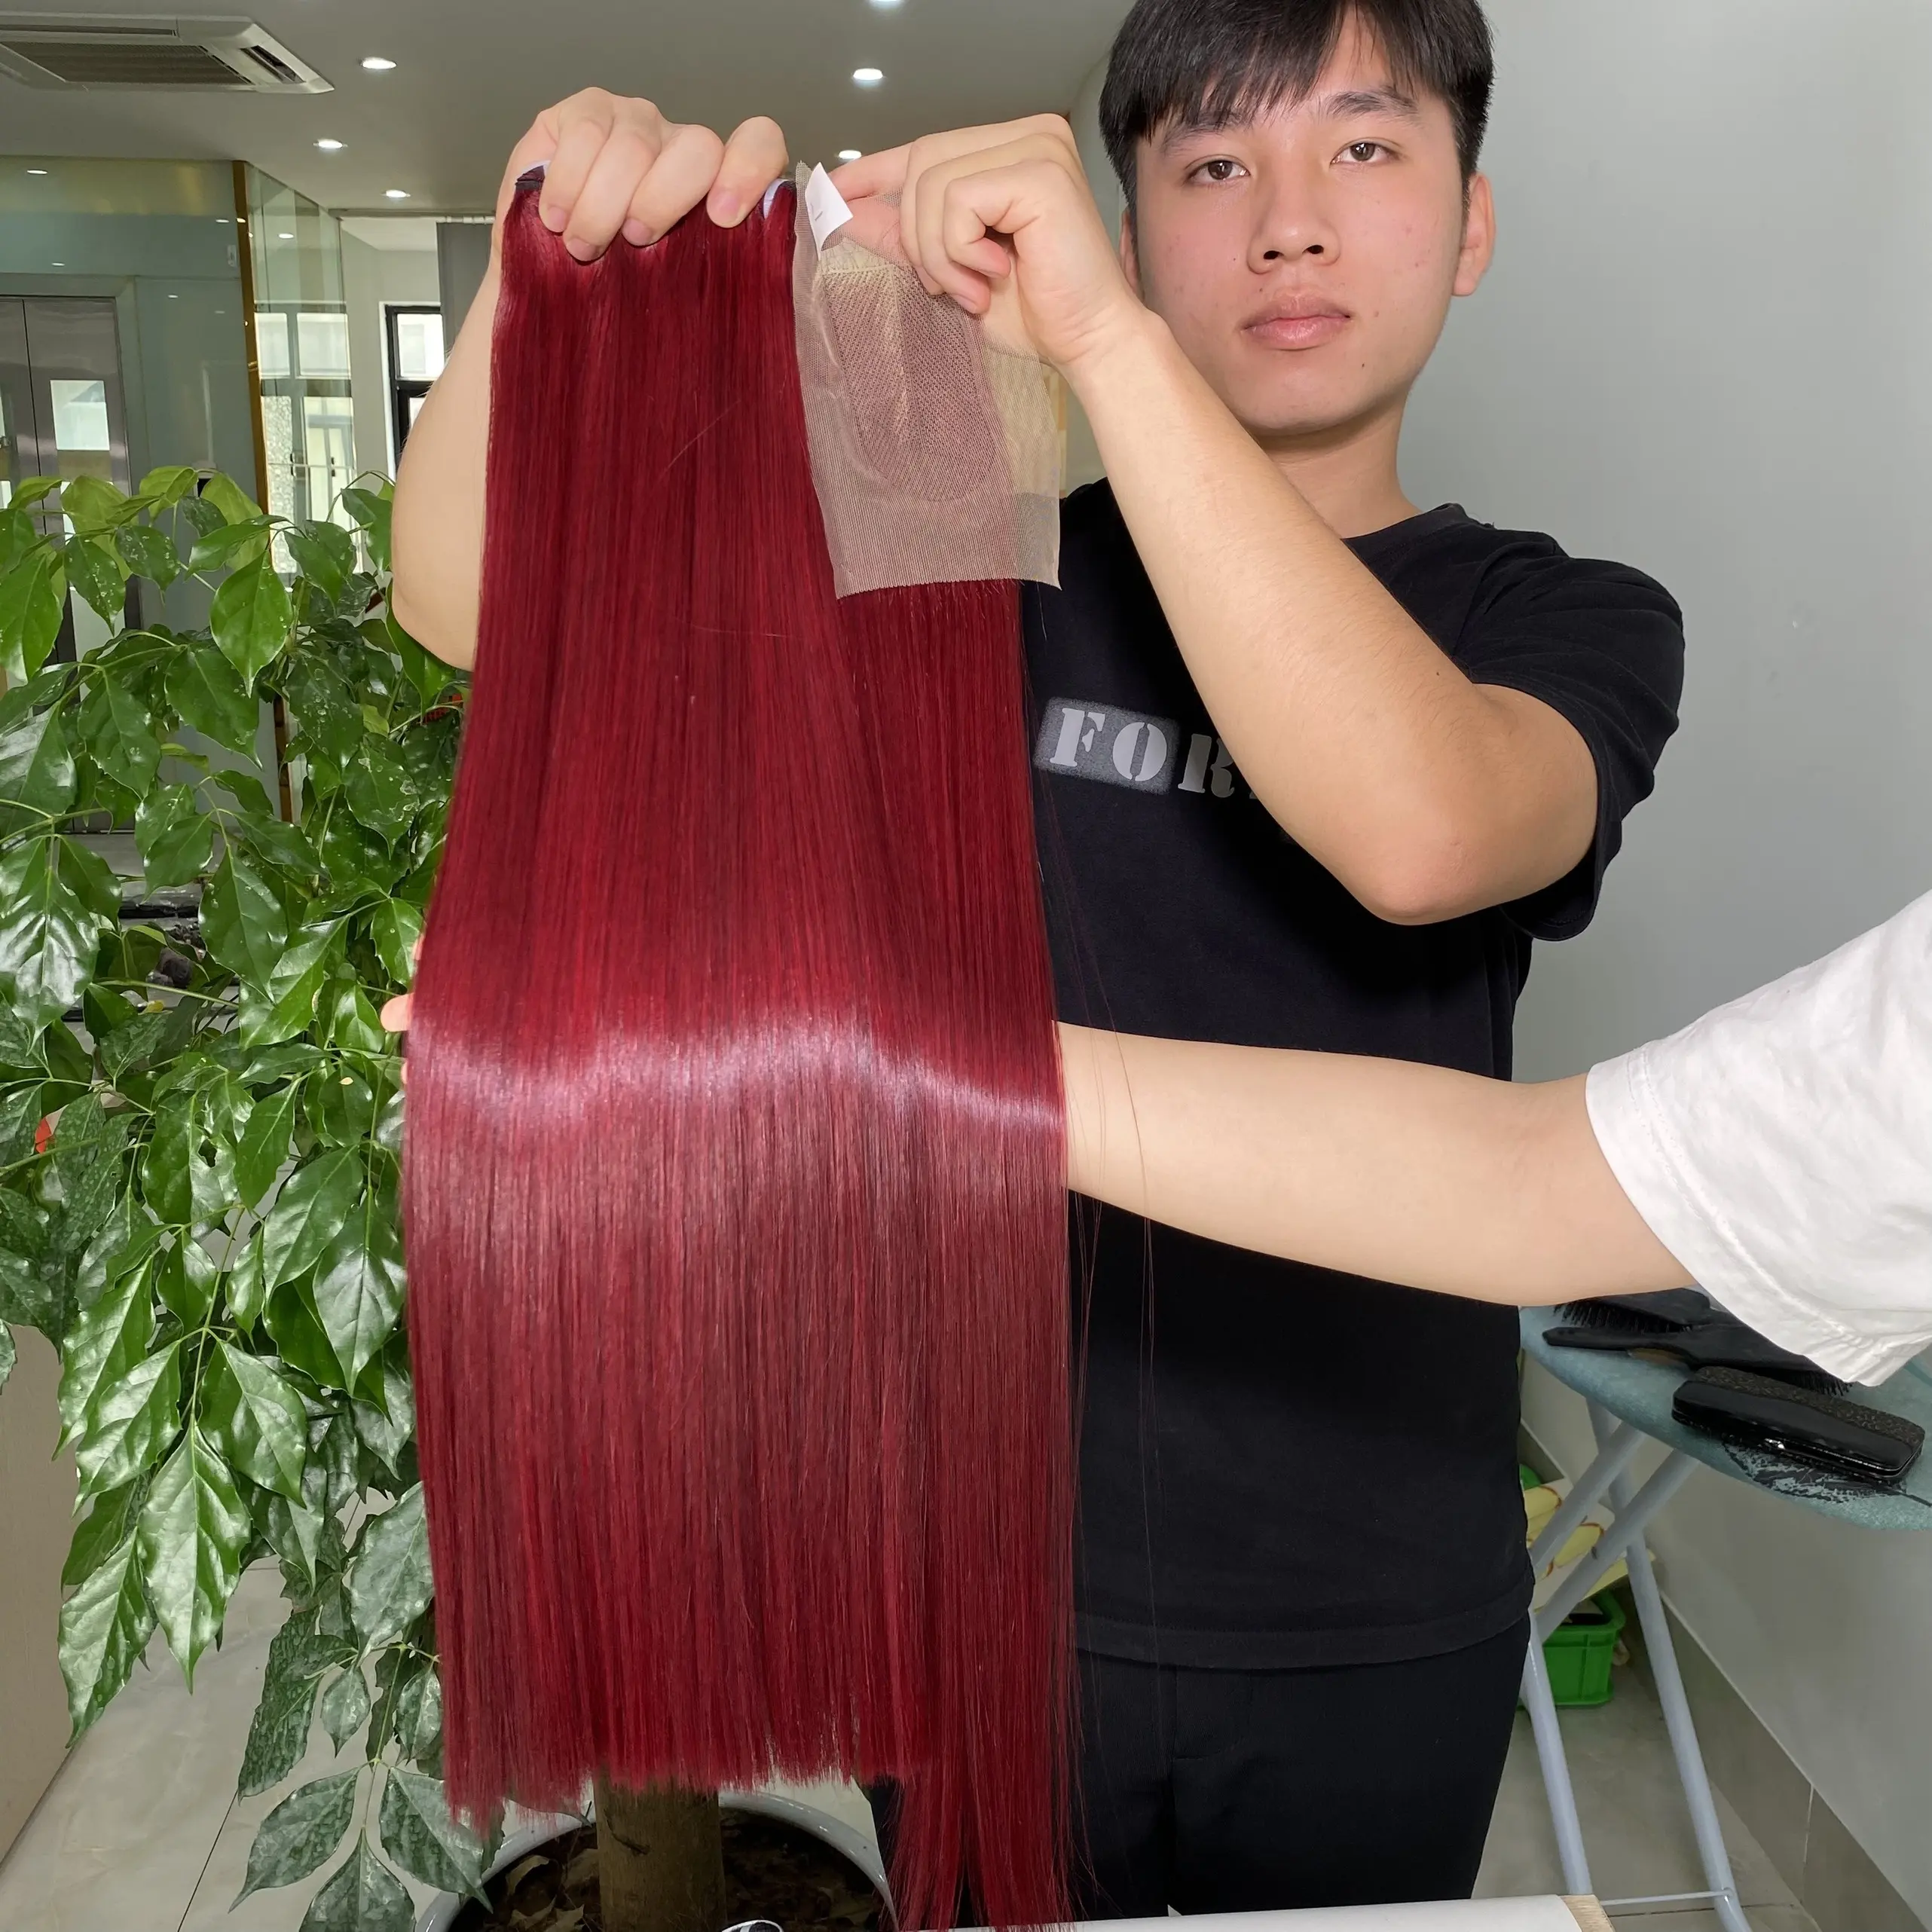 لحمة حزم تمديد الشعر بائع الجملة سعر من مصنع كبير Bugendy اللون الأحمر شعر طبيعي